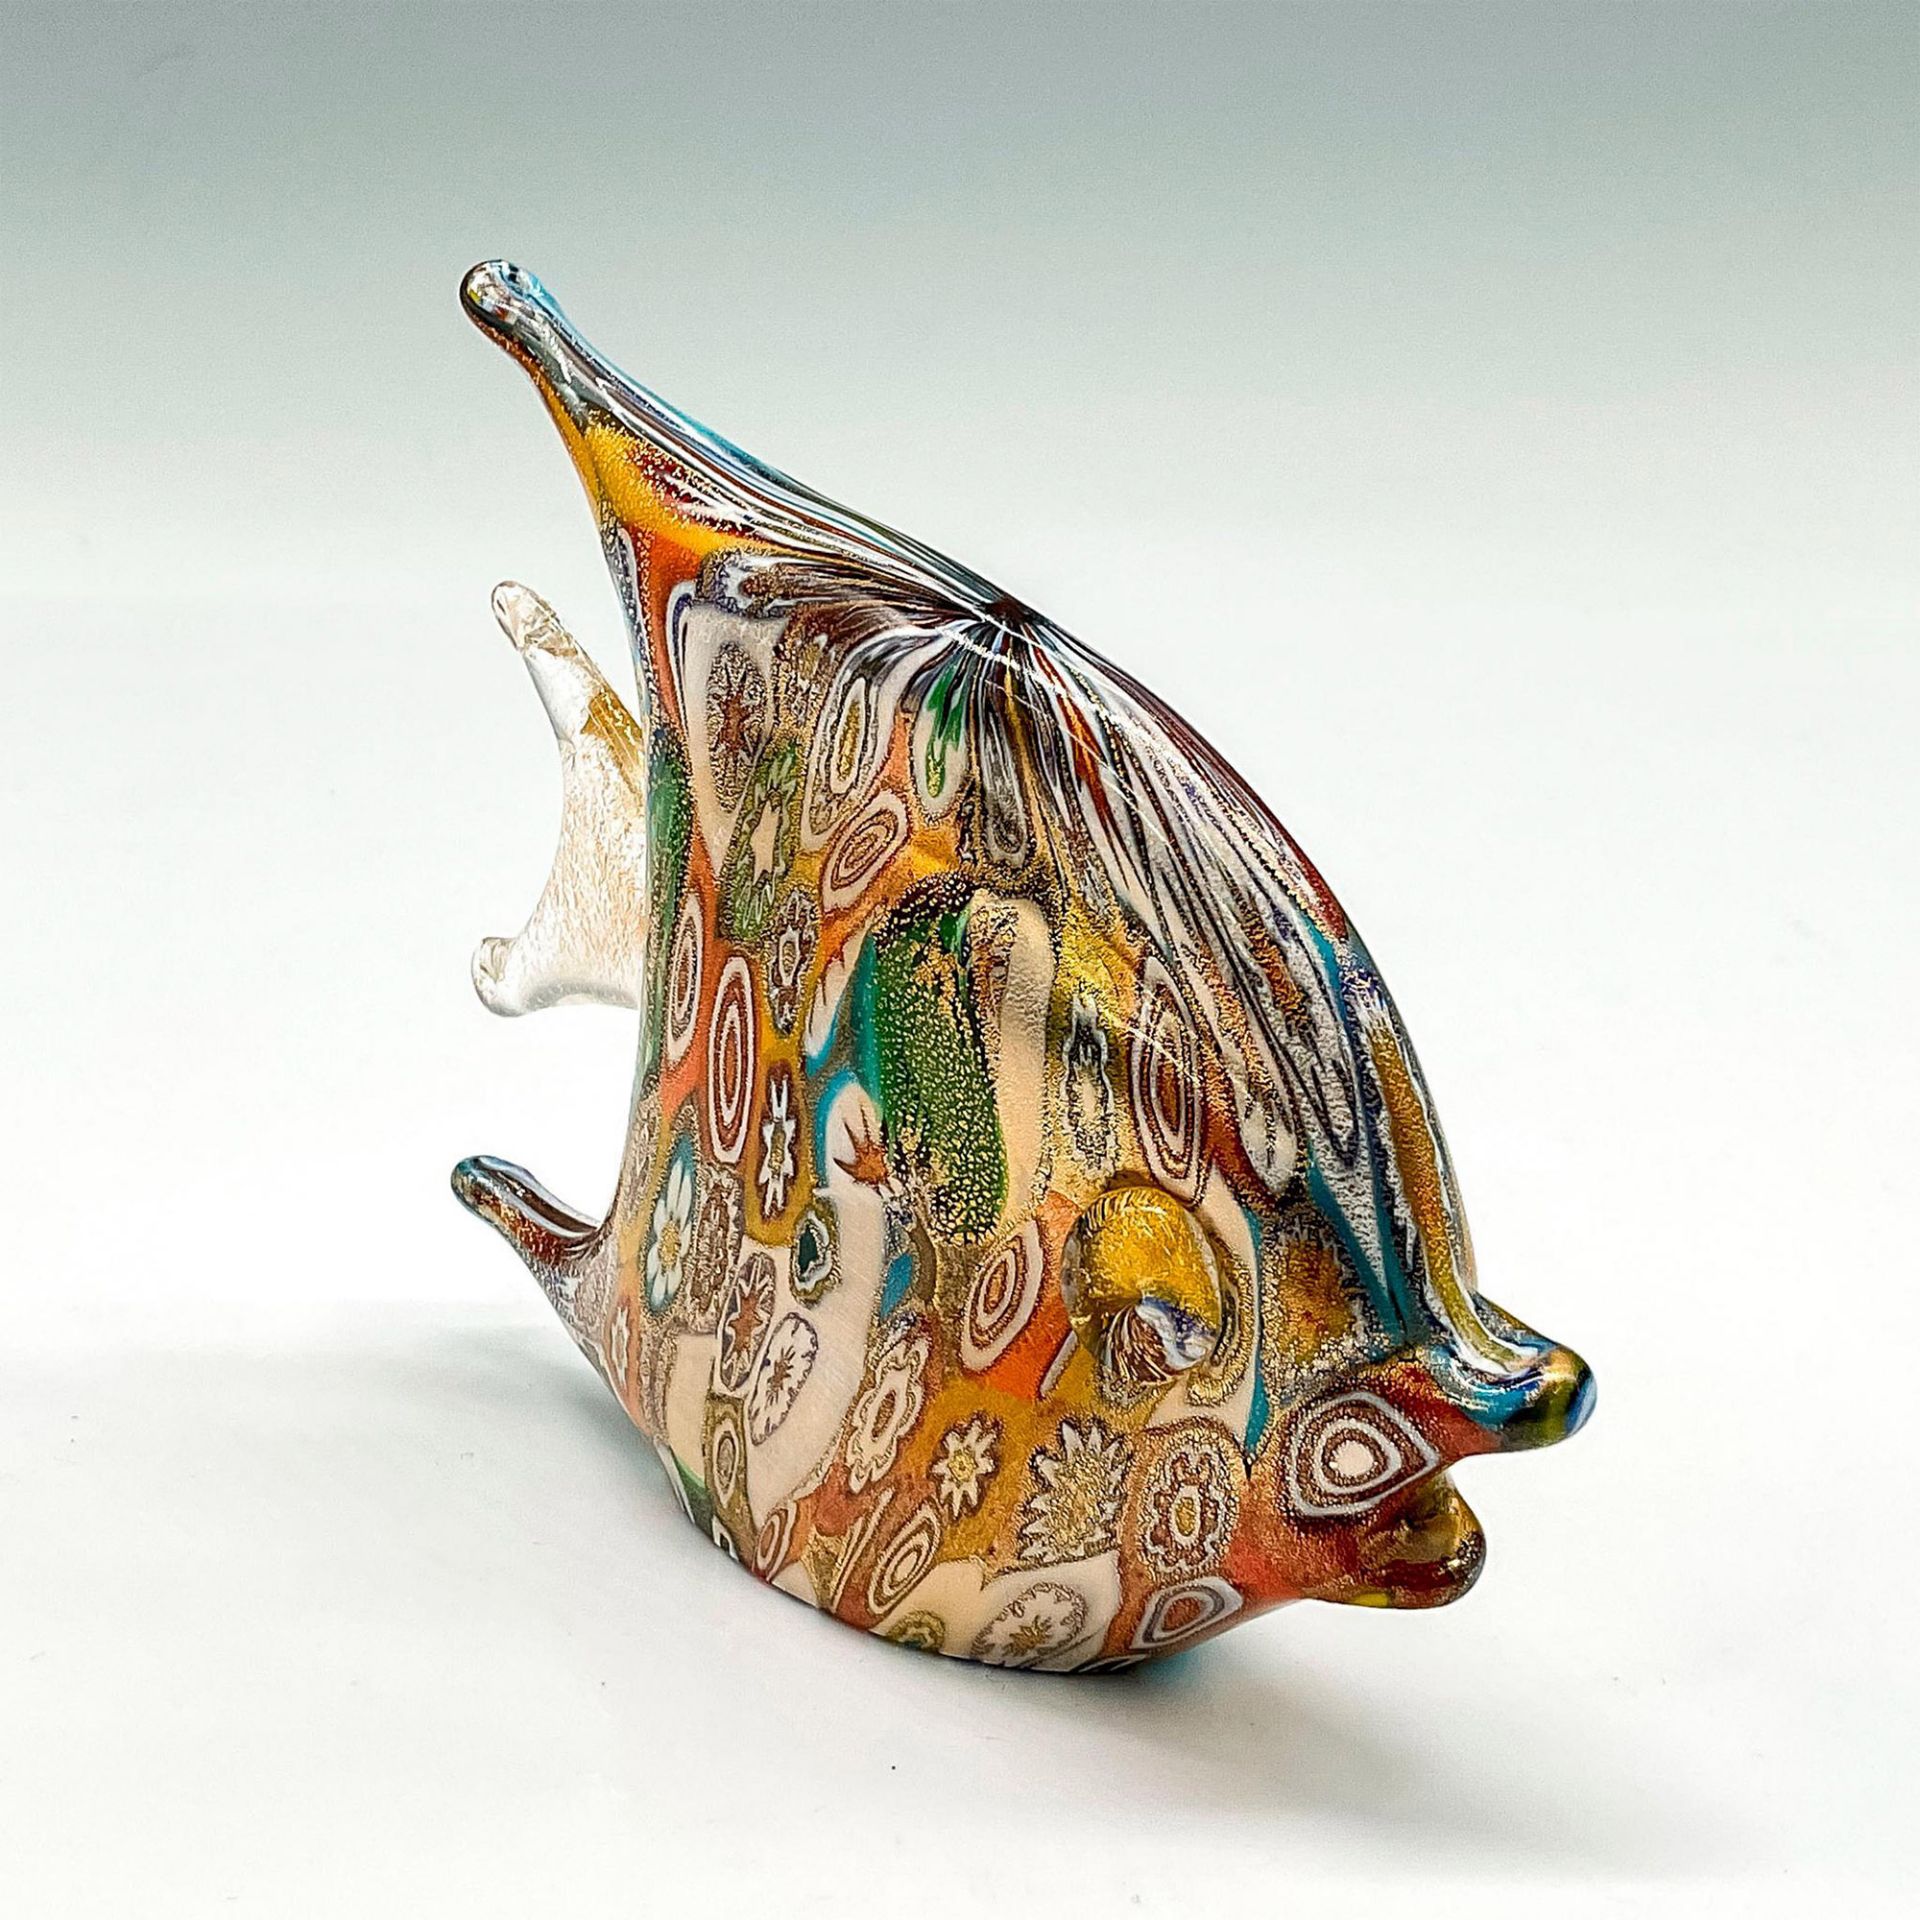 Unique Murano Glass Figurine, Golden Quilt Millefiori Fish - Image 2 of 3